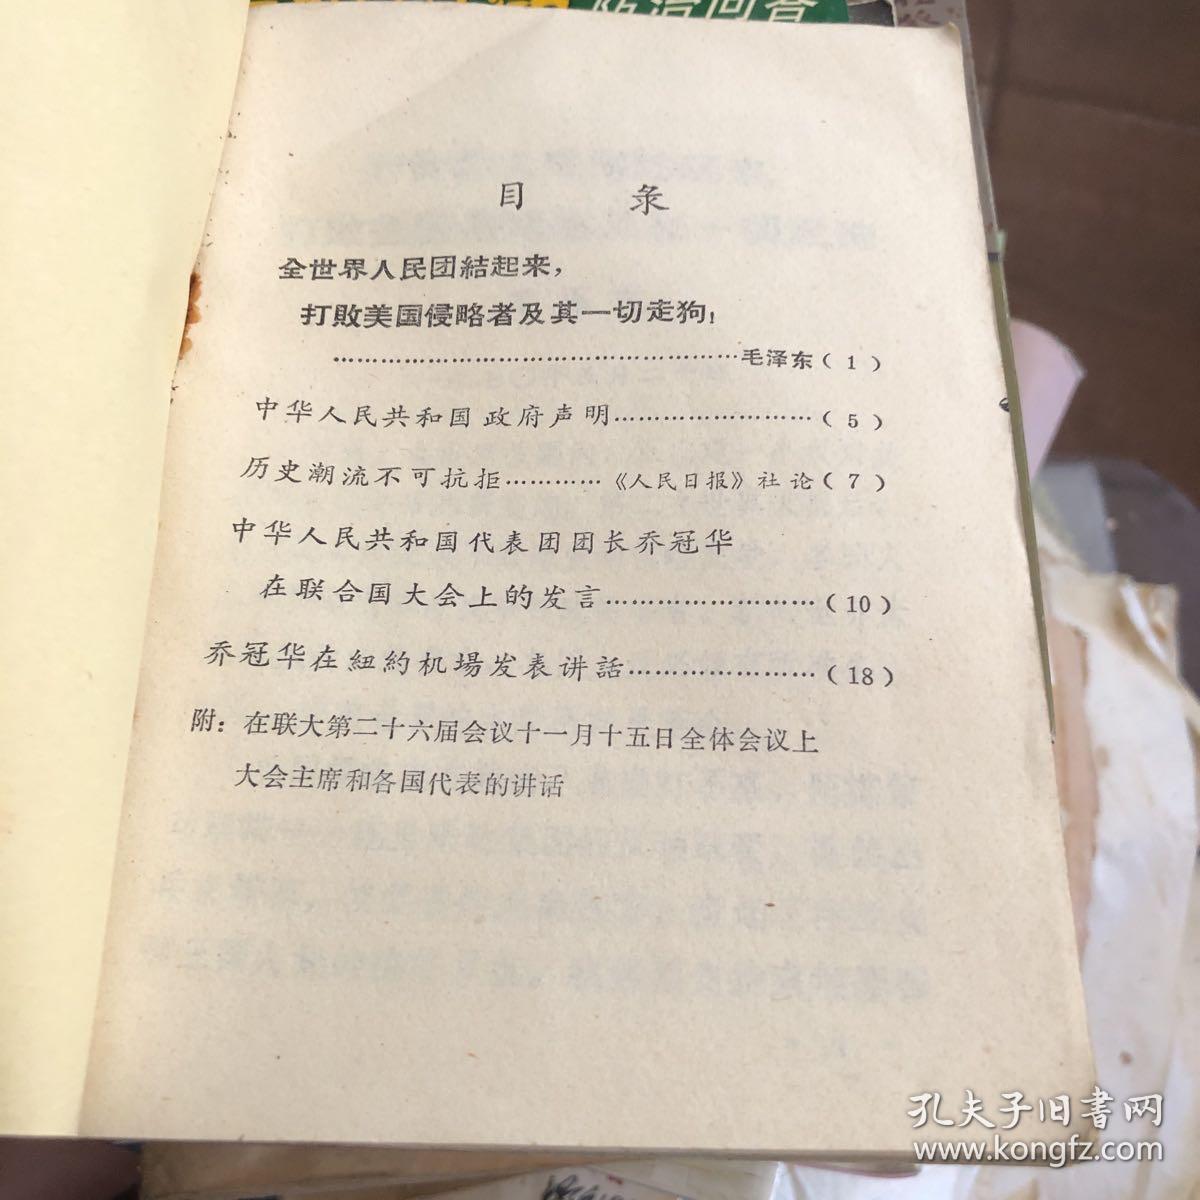 1971年赣州地区革命委员会政治部印 形势教育学习材料